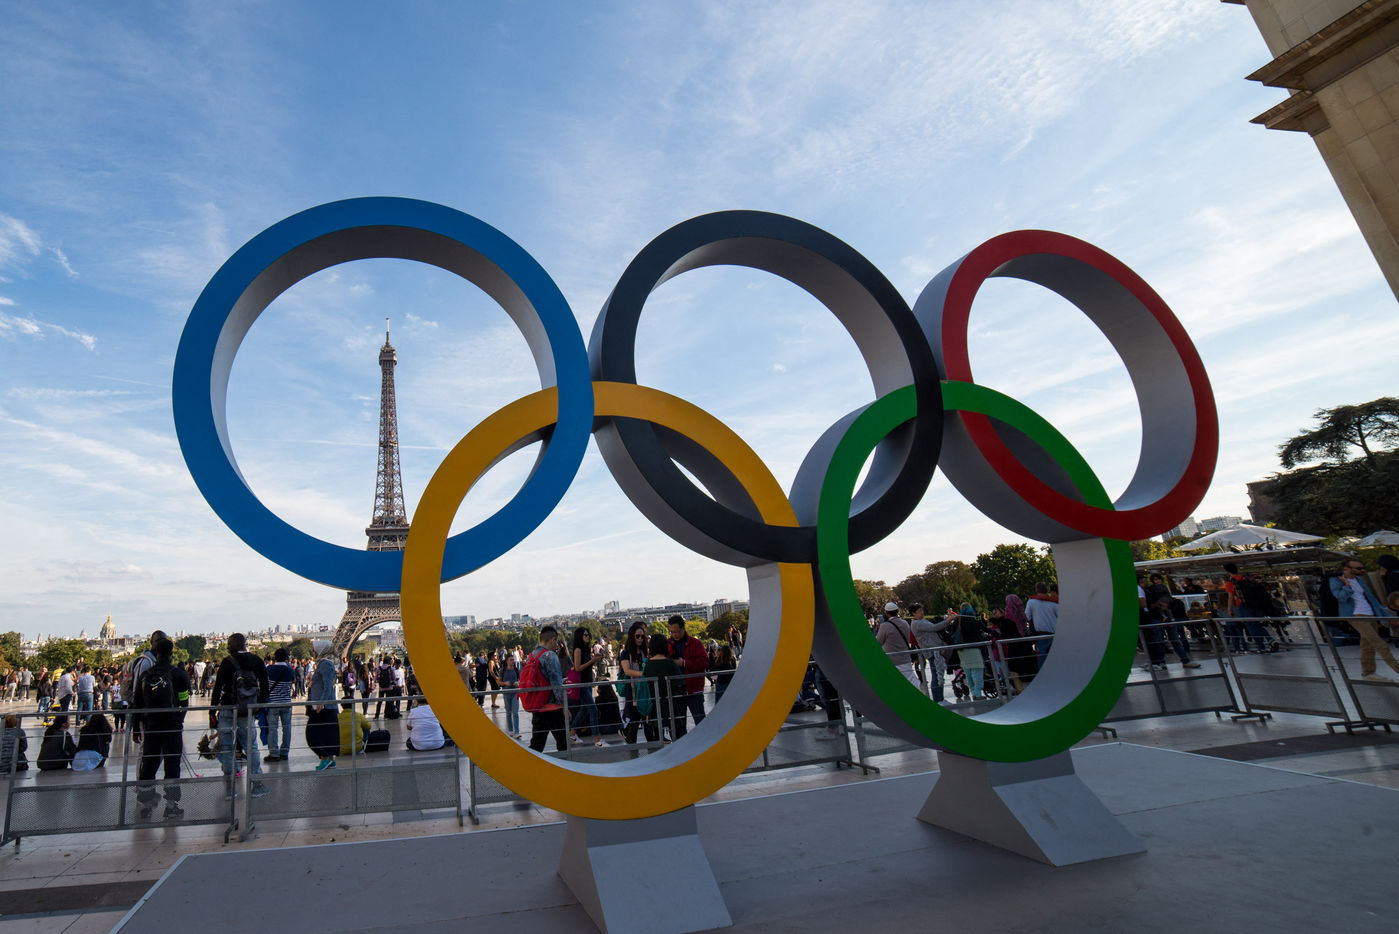 Les anneaux Olympiques sur le parvis du Trocadero (Riccardo Milani